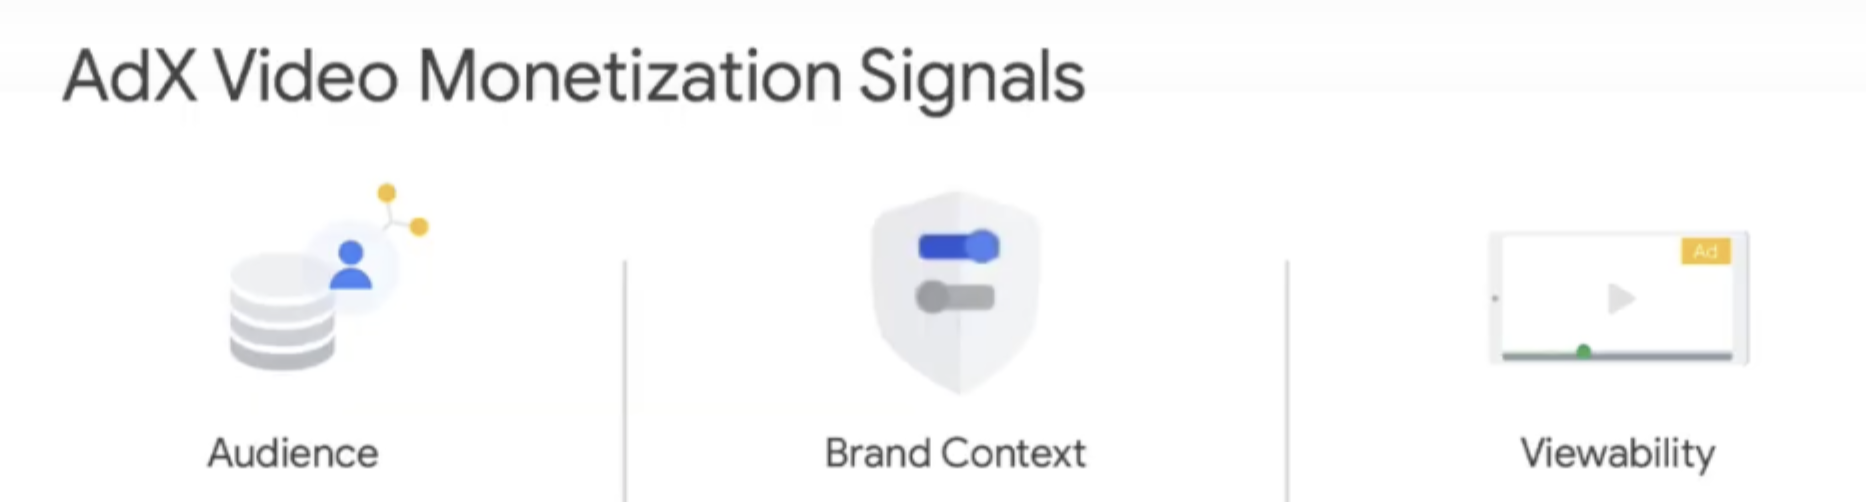 AdX_video_monetization_signals